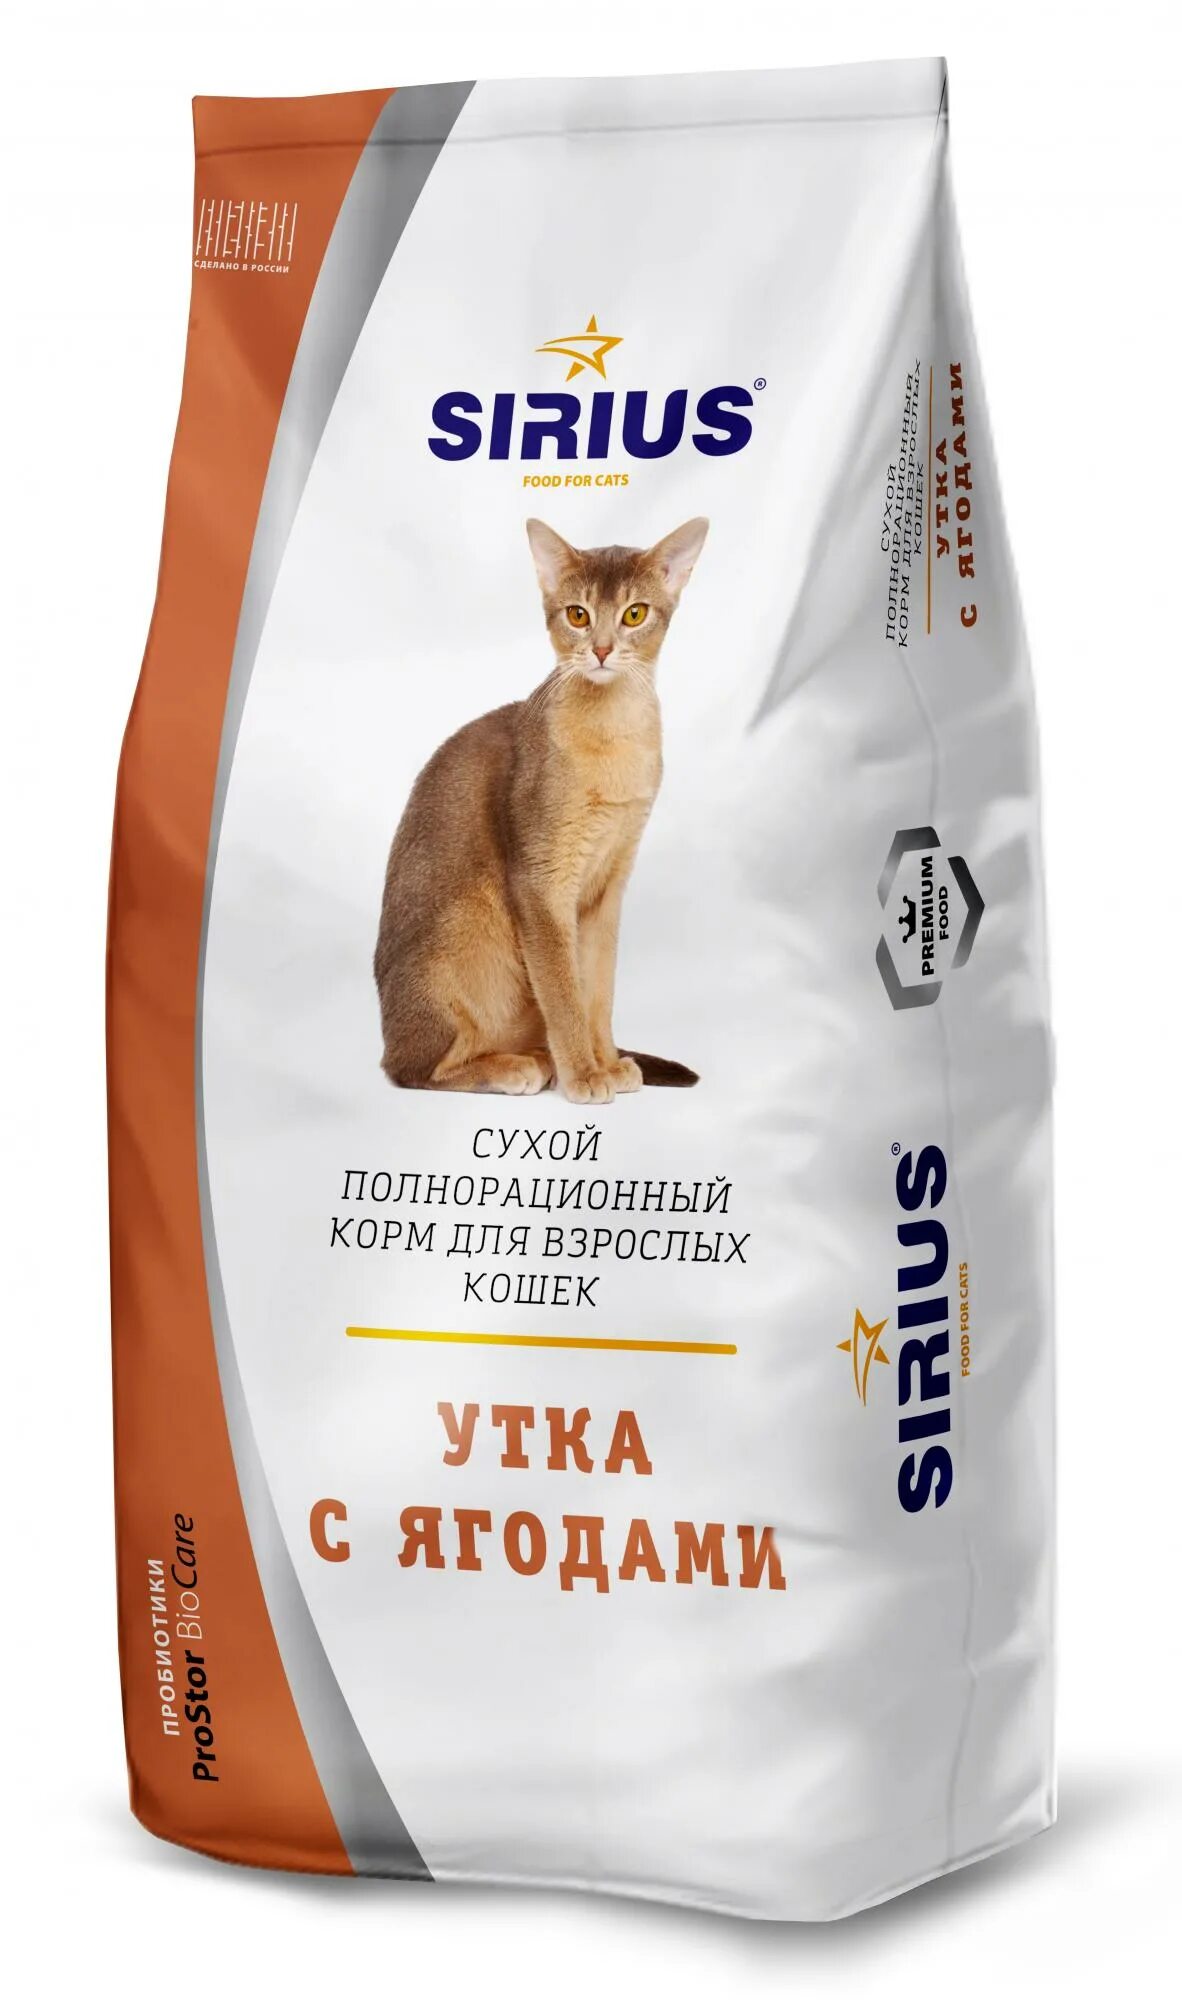 Недорогой качественный корм для кошек. Корм Сириус для кошек лосось и рис. Сириус корм для кошек 10 кг. Sirius Platinum корм. Корм Сириус премиум для кошек.